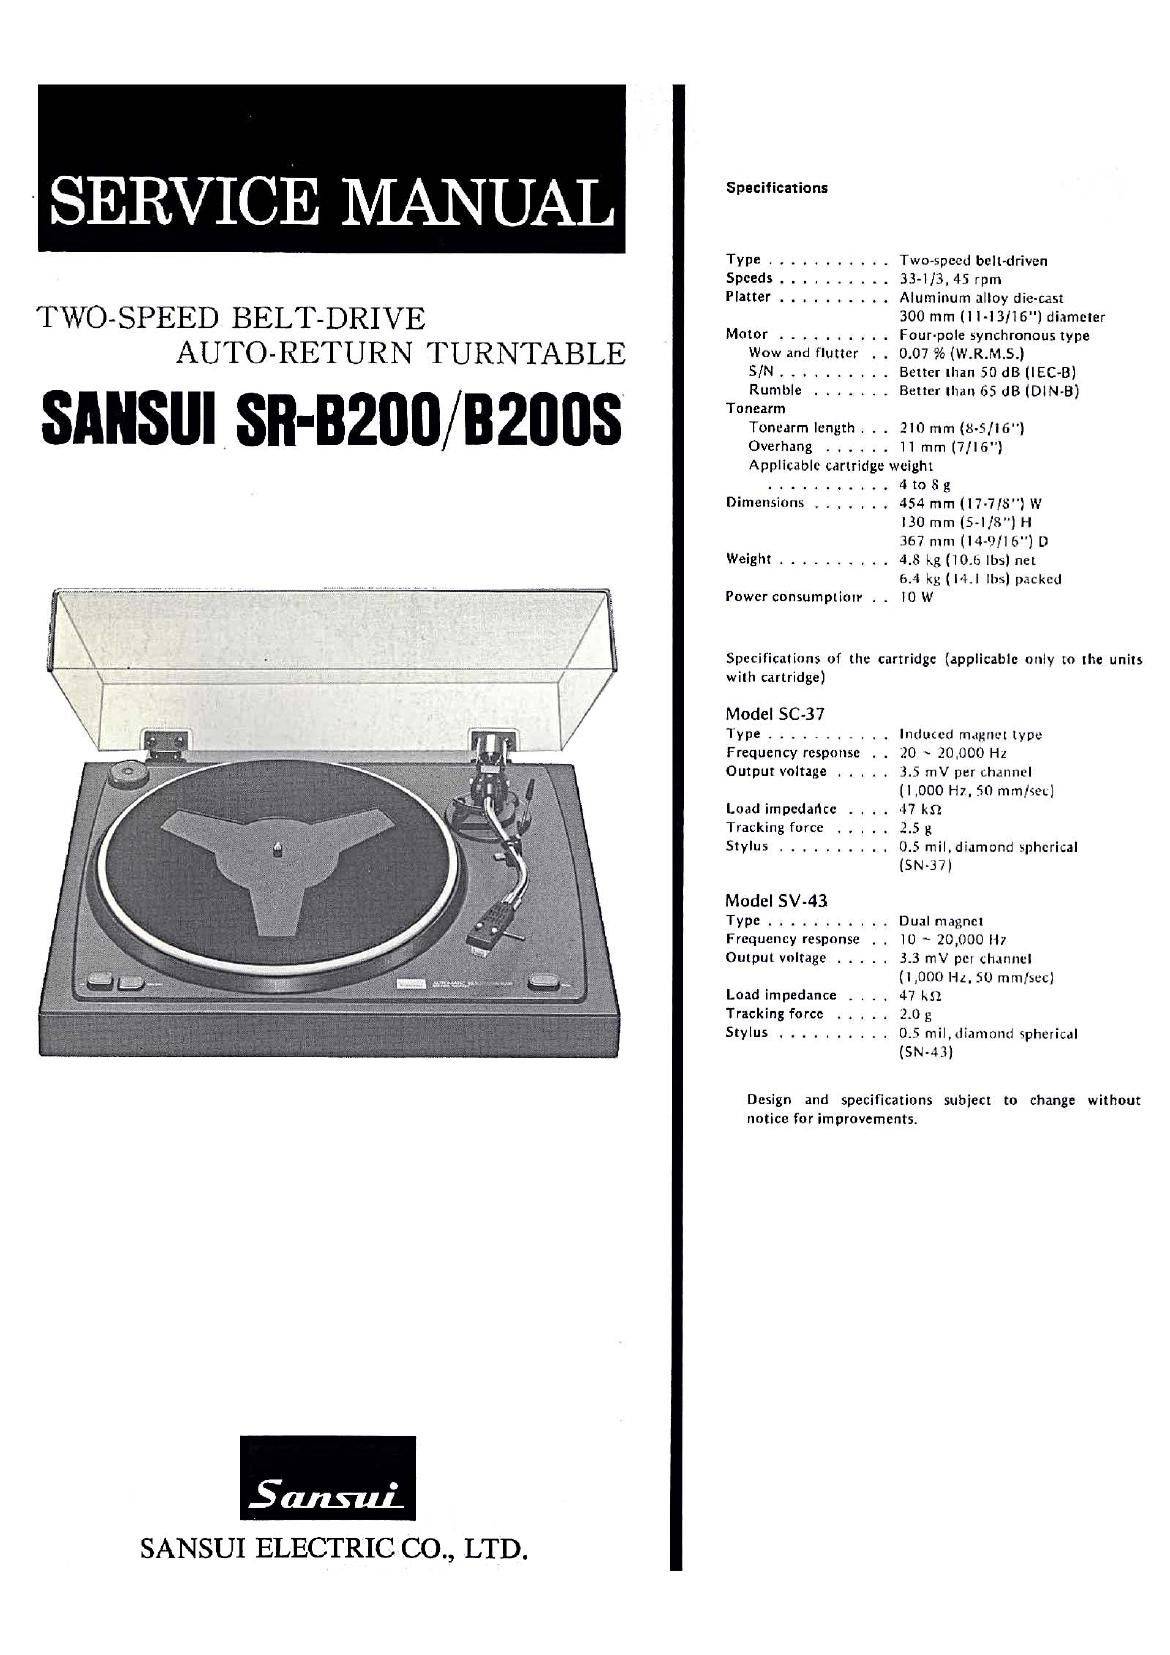 Sansui SR-B200 S